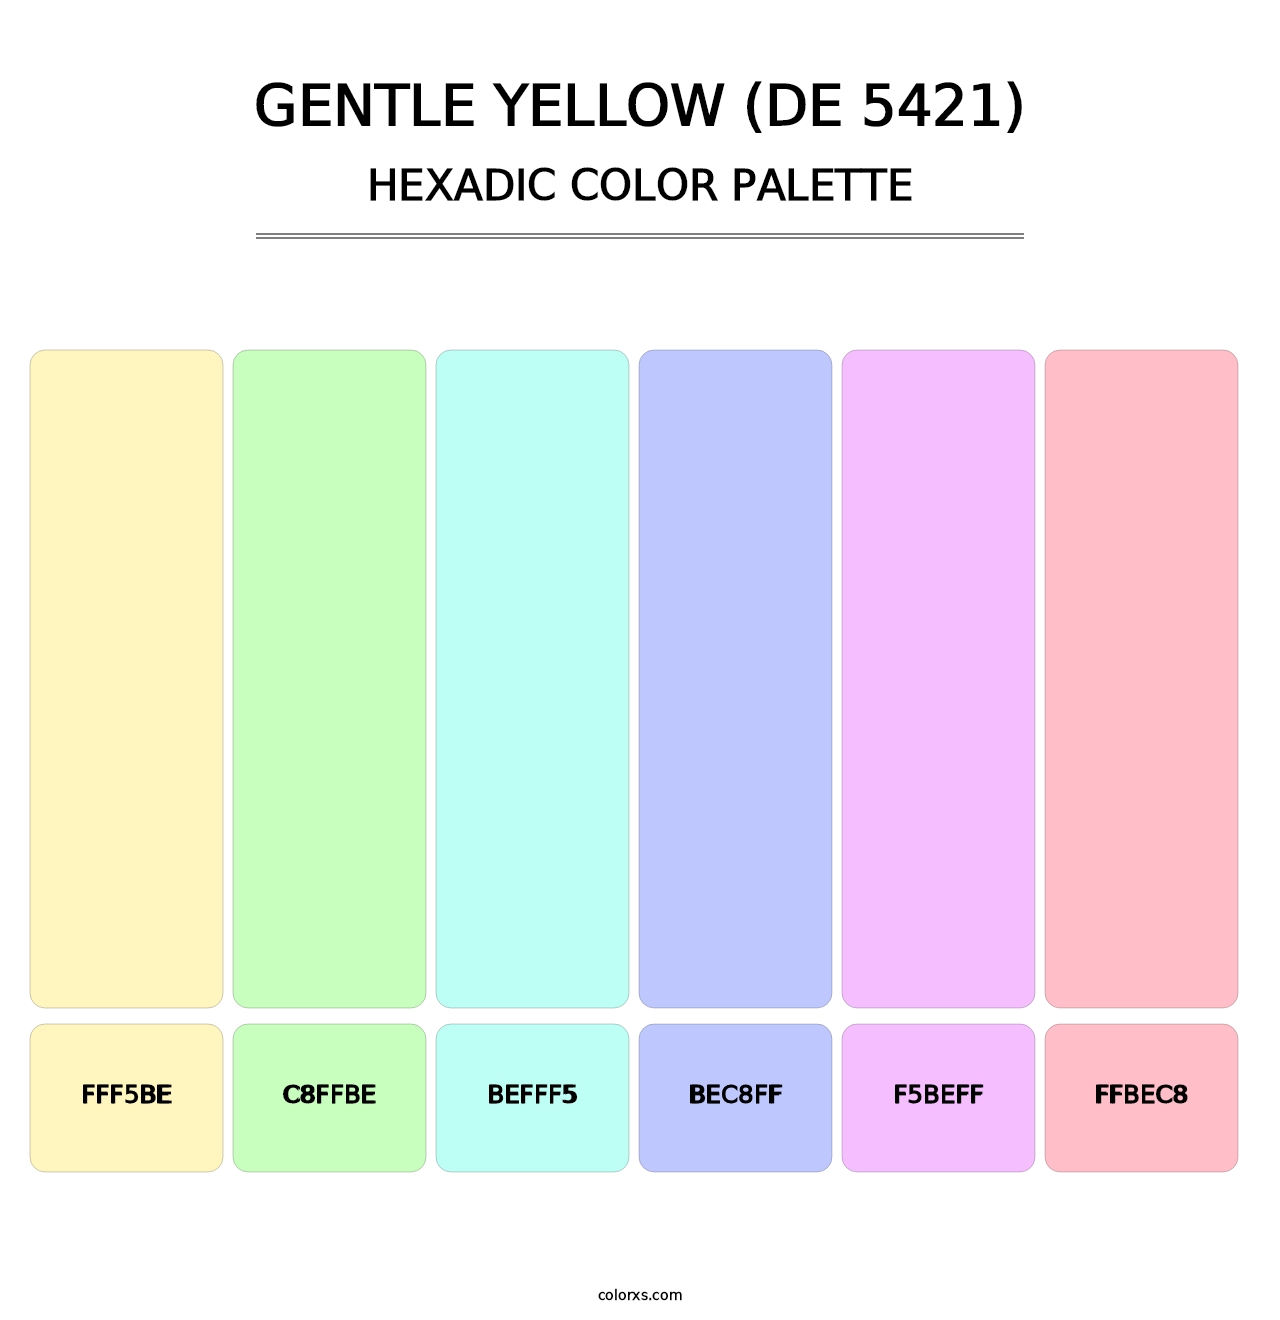 Gentle Yellow (DE 5421) - Hexadic Color Palette